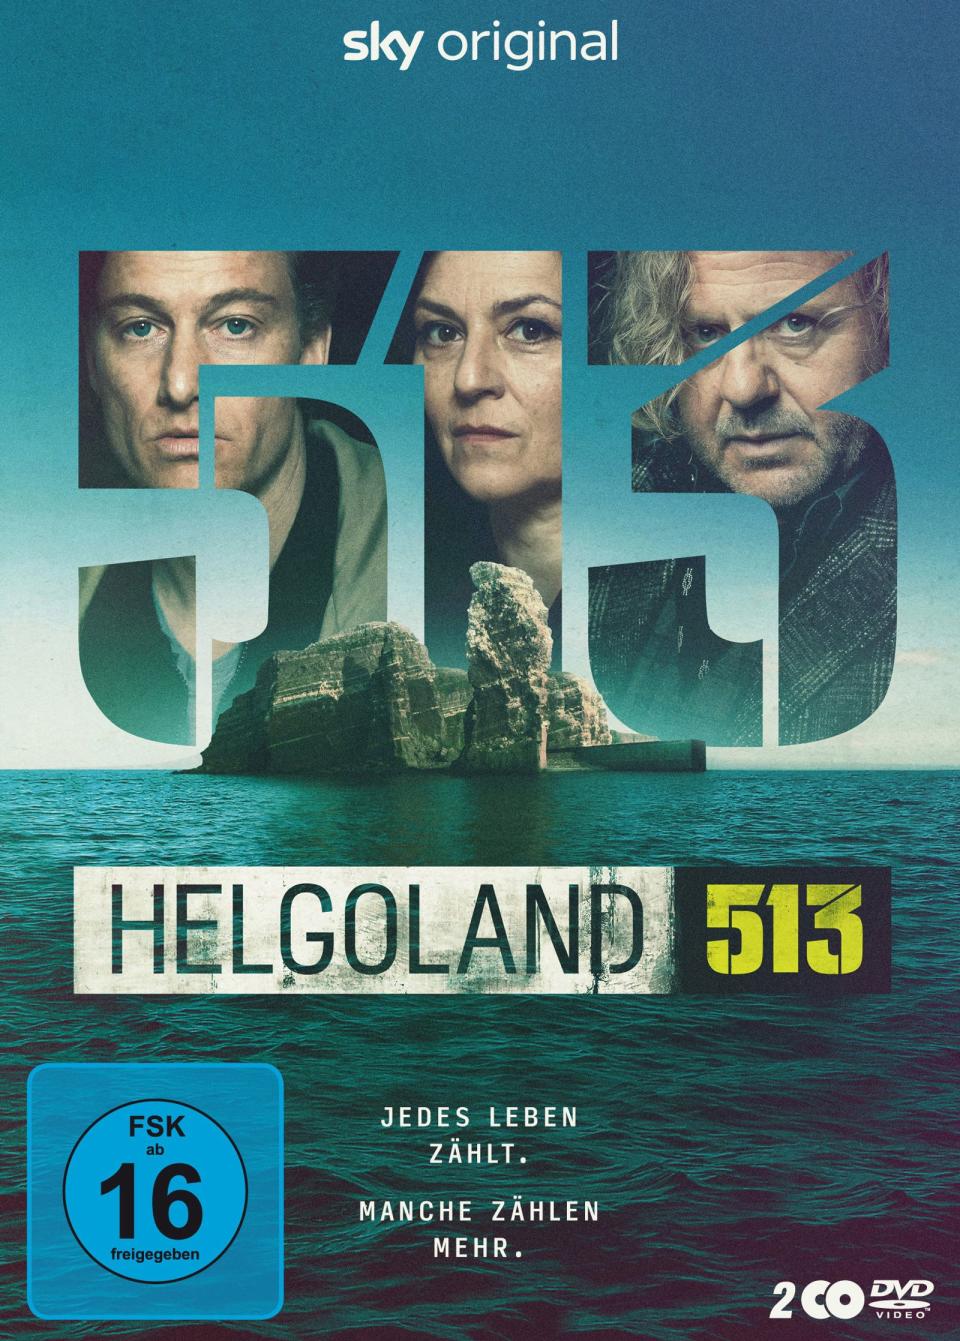 Sky zieht den Stecker: Mit "Helgoland 513" schickte man im Frühjahr das letzte deutsche Serien-Original an den Start. (Bild: WVG)